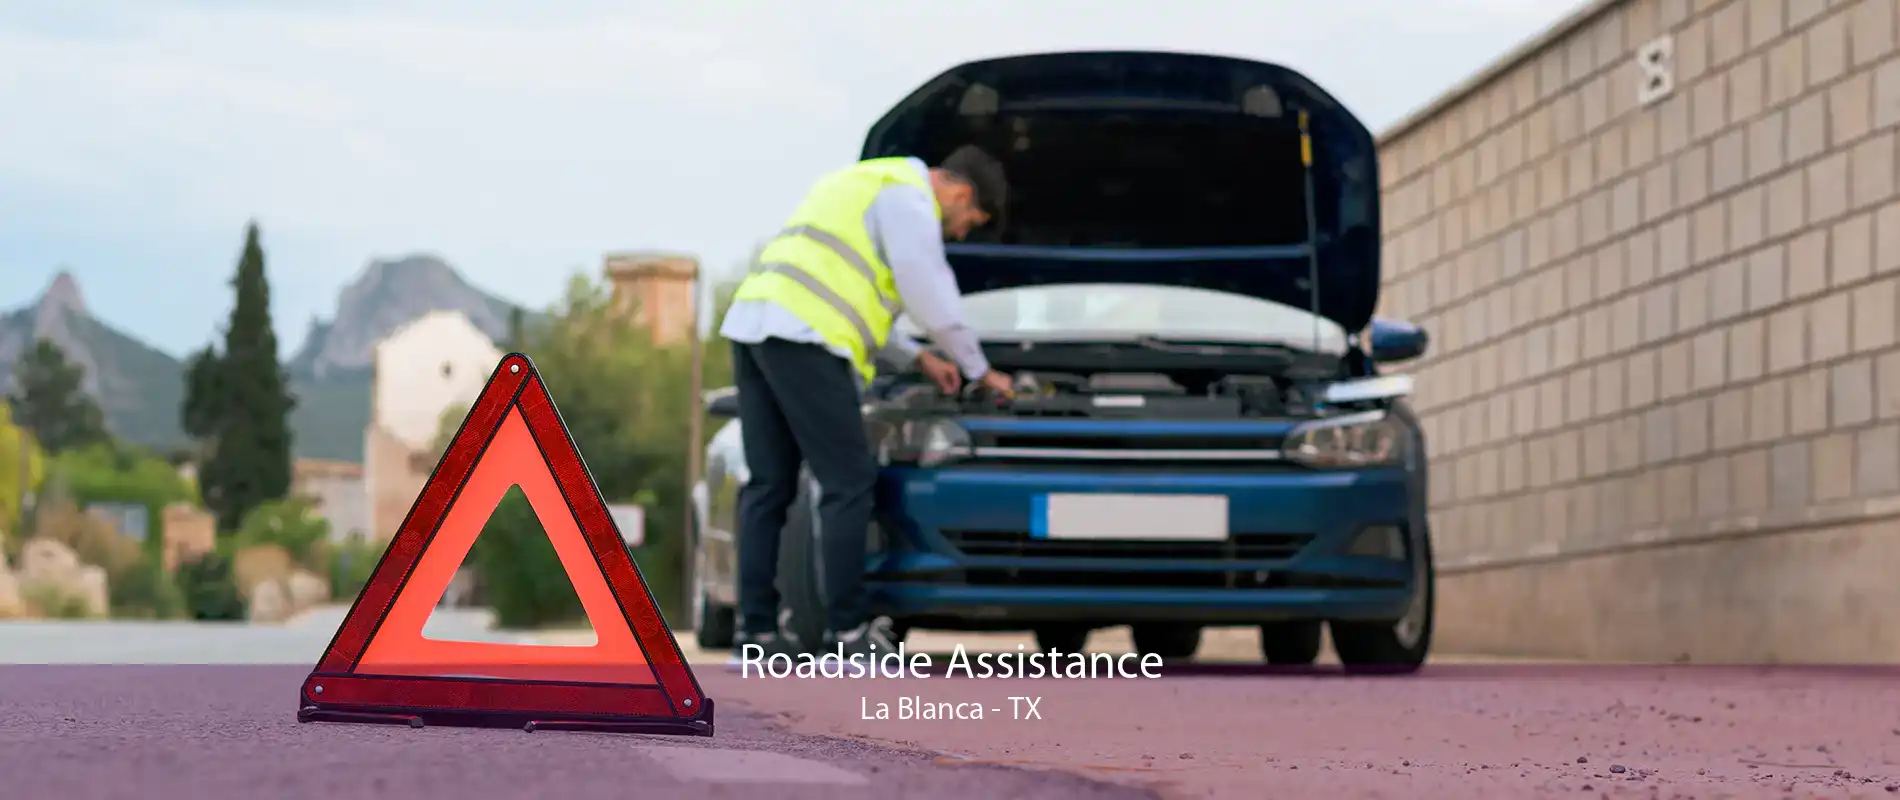 Roadside Assistance La Blanca - TX